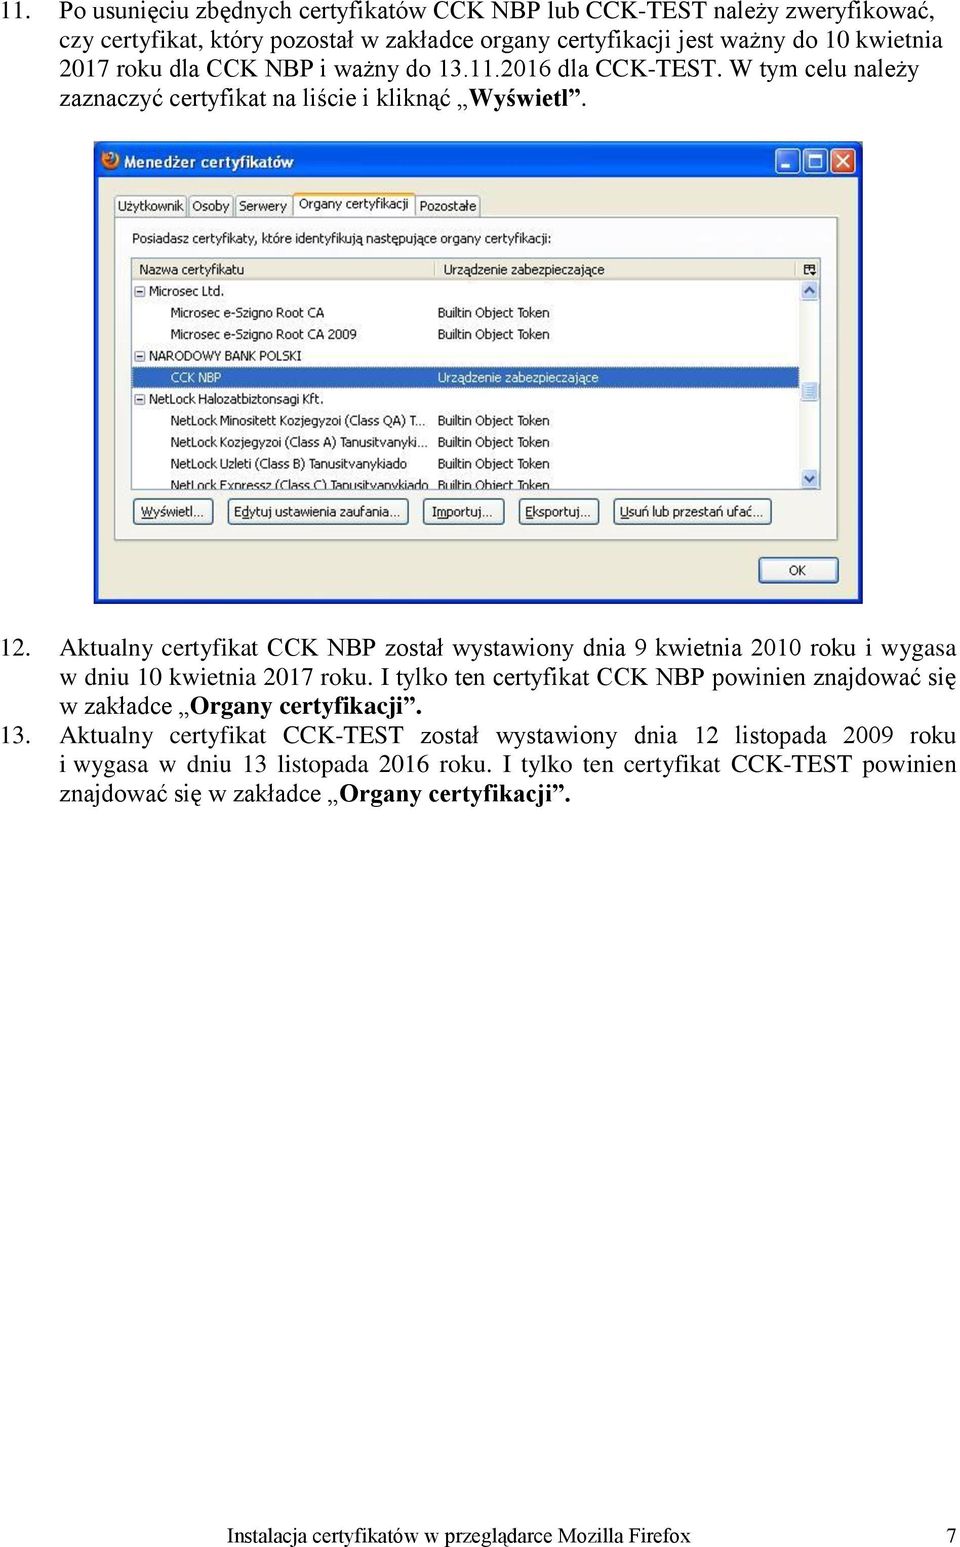 Aktualny certyfikat CCK NBP został wystawiony dnia 9 kwietnia 2010 roku i wygasa w dniu 10 kwietnia 2017 roku.